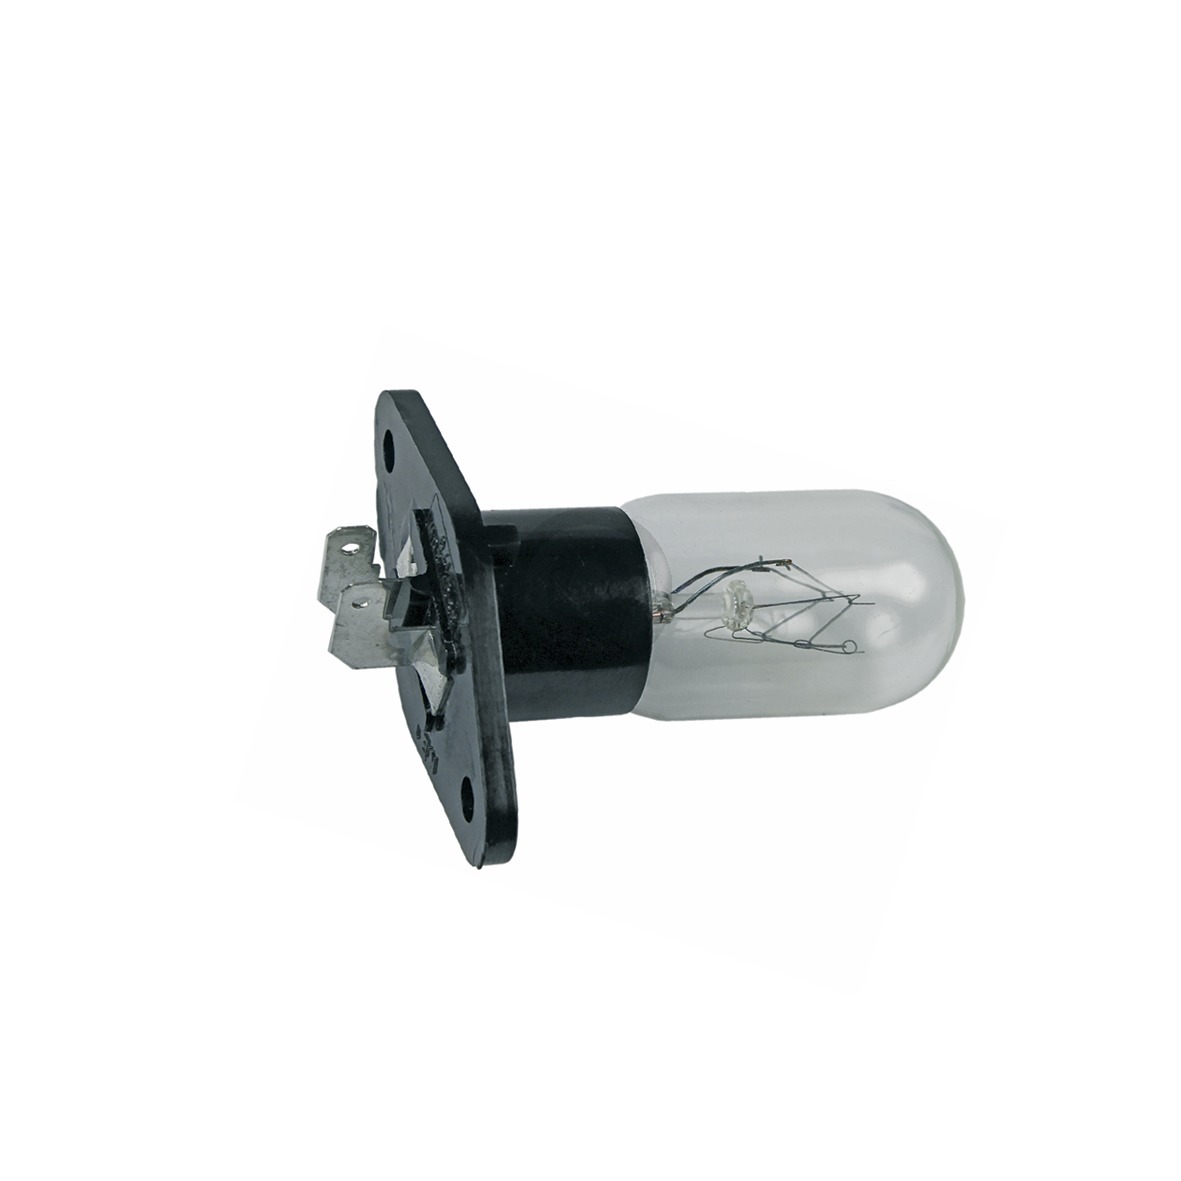 Lampe 20W 230V SAMSUNG 4713-001524 mit Befestigungssockel 2x4,8mmAMP für Mikrowelle